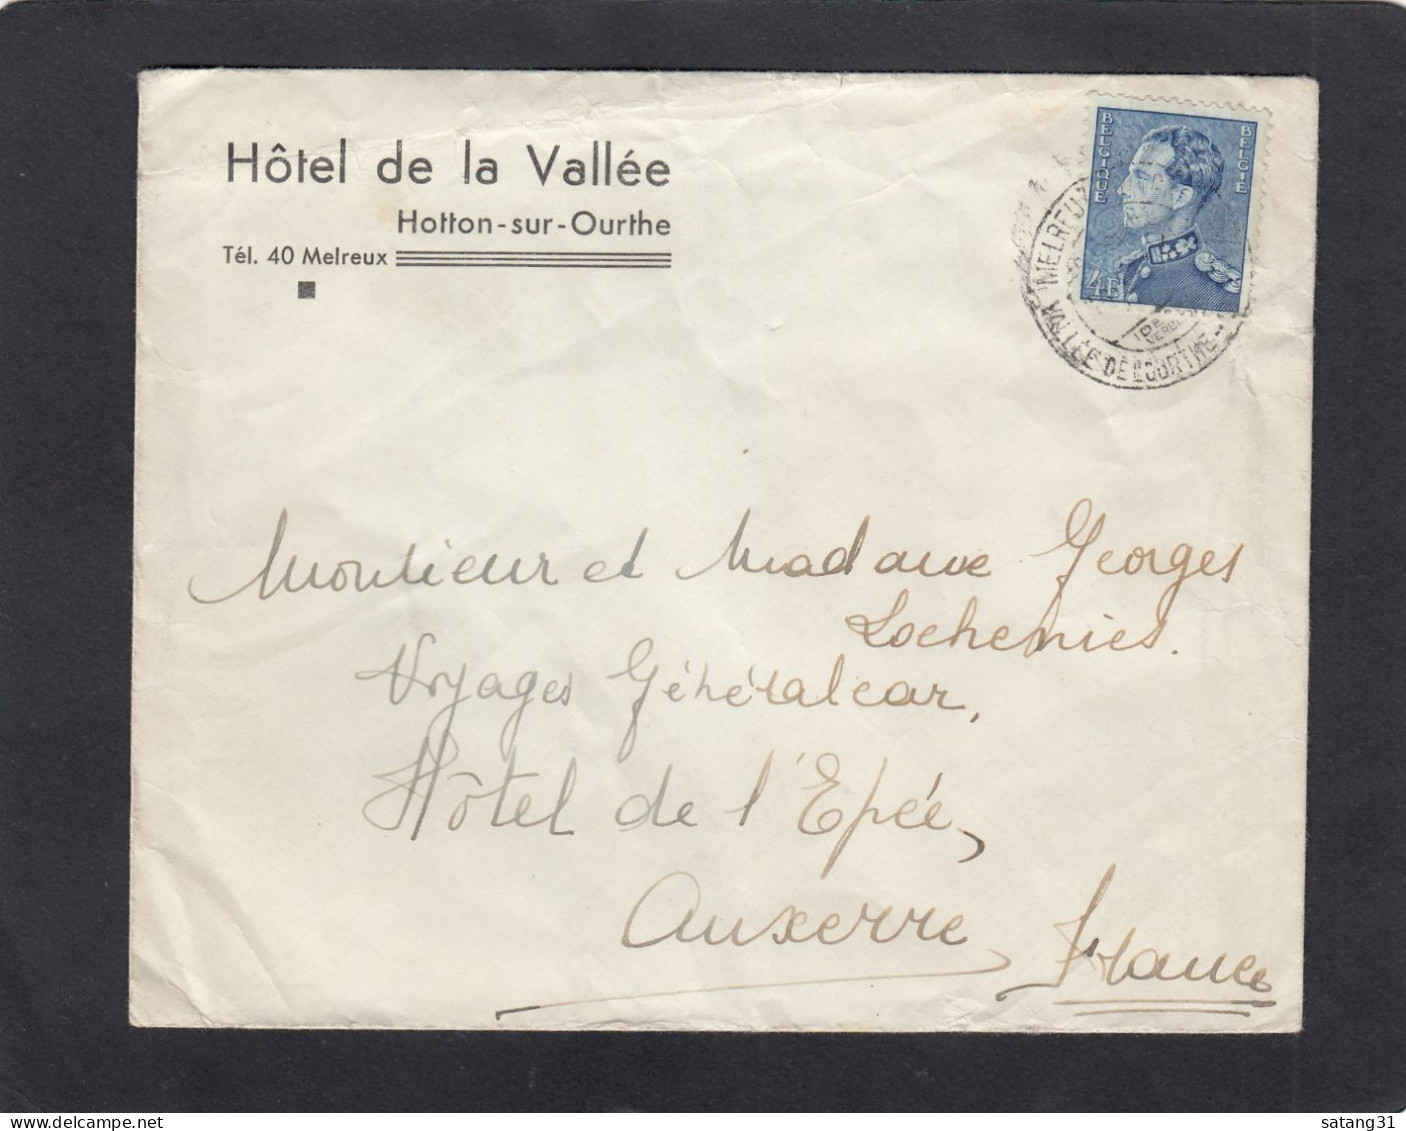 HOTEL DE LA VALLEE, HOTTON SUR OURTHE. - Covers & Documents